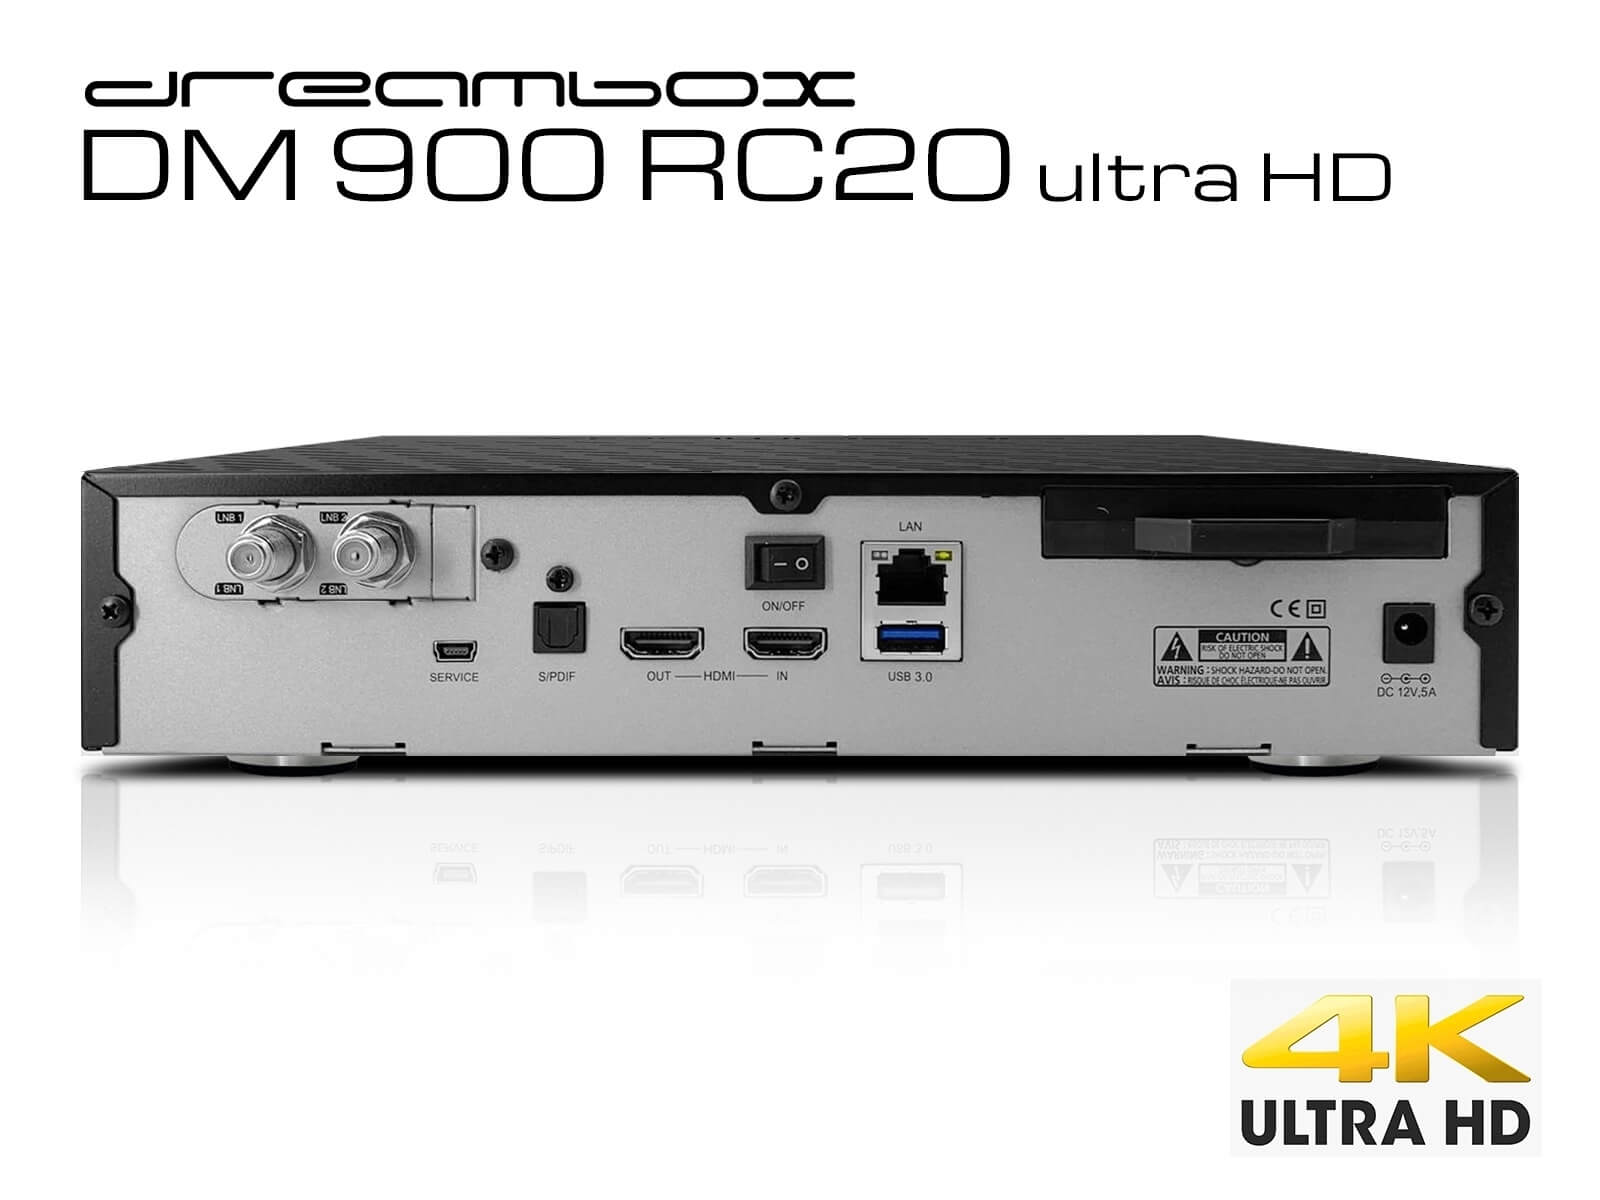 TV boksen Dreambox DM900 RC20 giver et væld af muligheder. Ikke bare justering af alt i softwaren men også et stort udvalg af tilslutningsmuligheder.